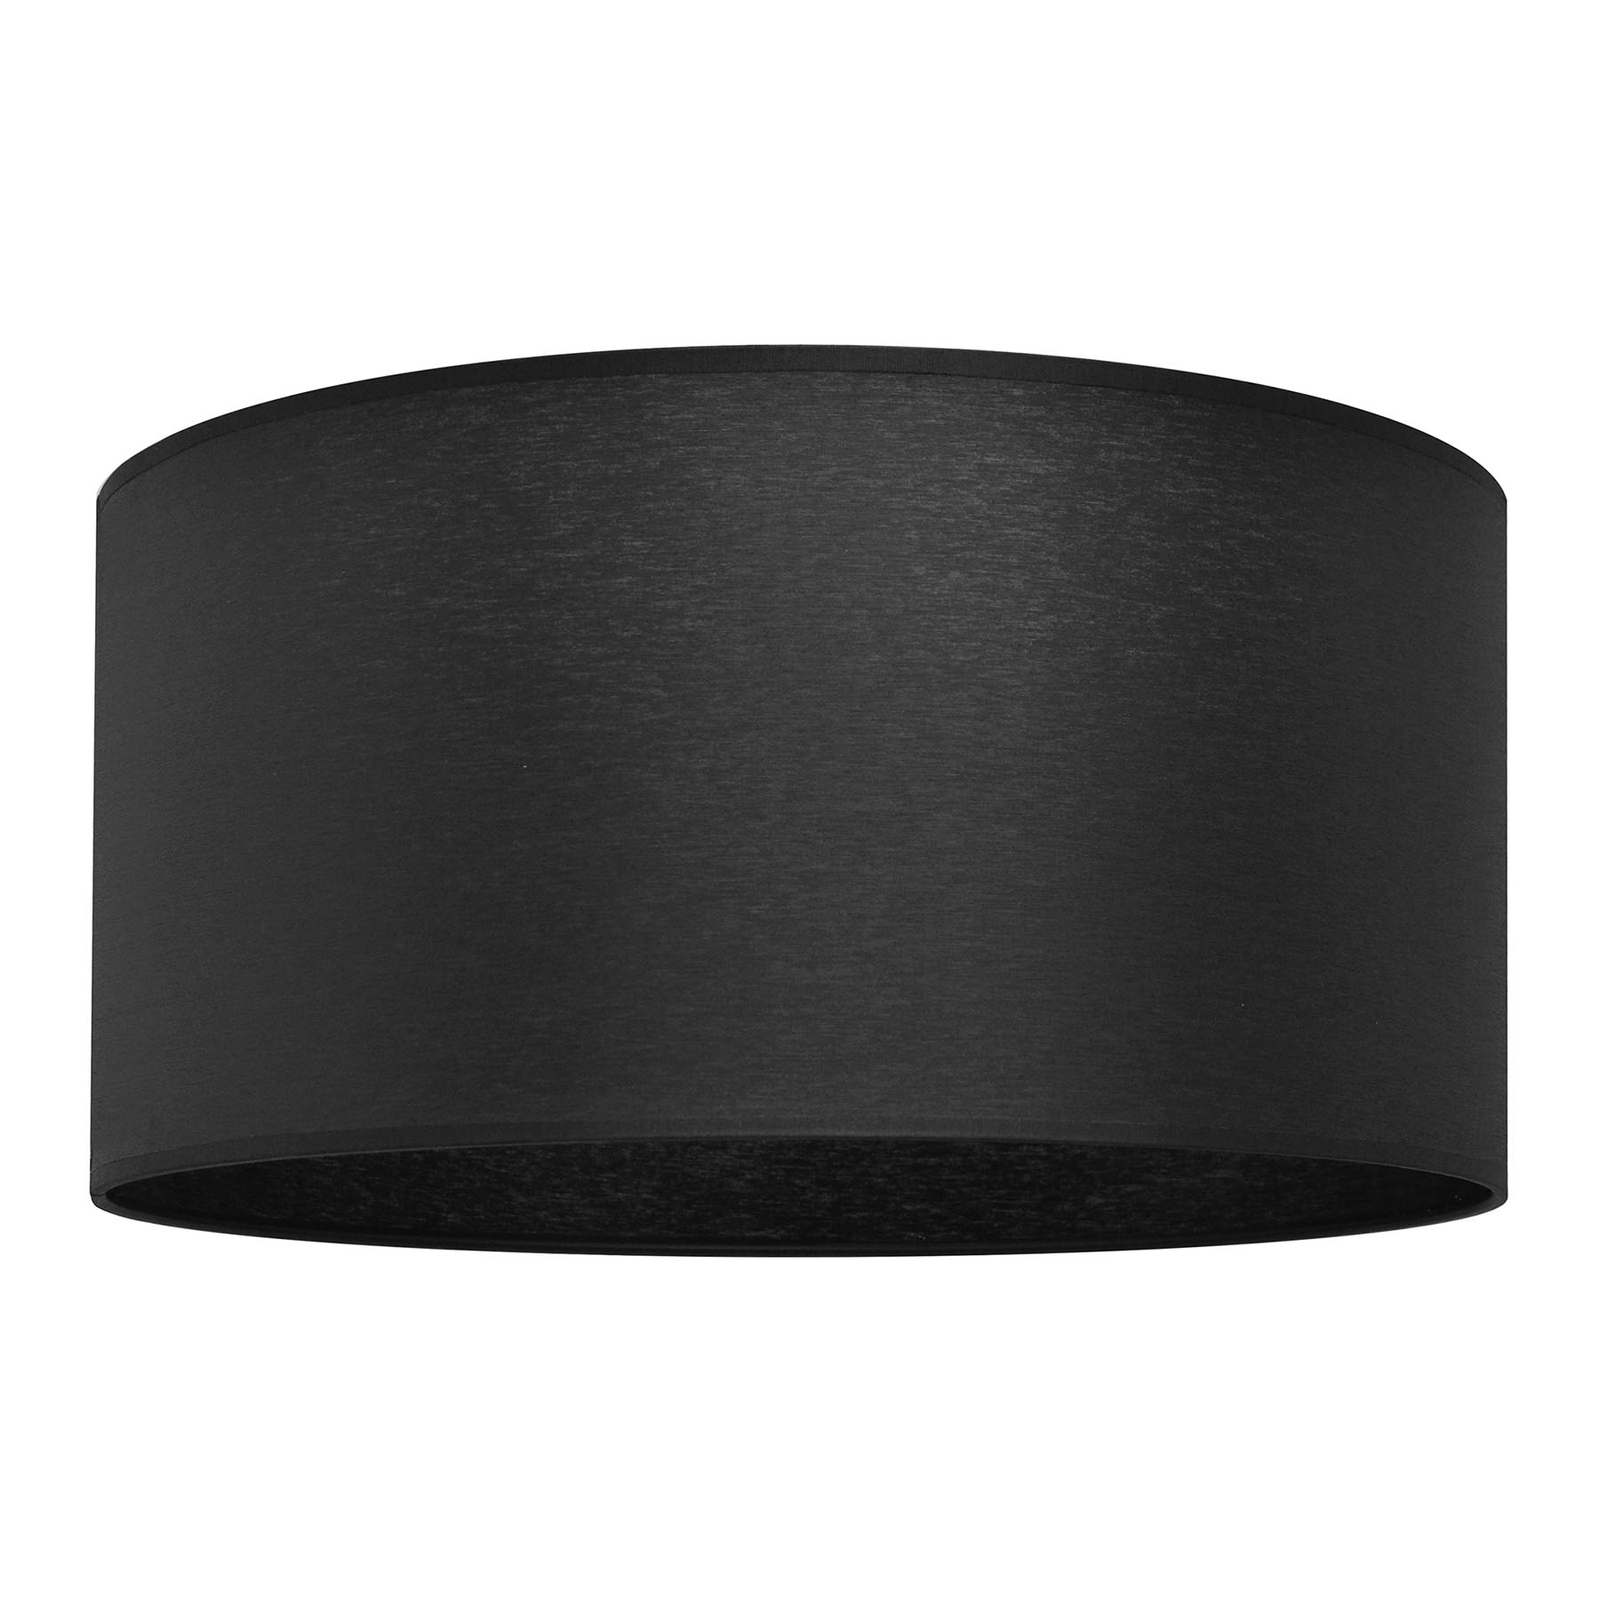 Lampeskærm Alba, Ø 40 cm, E27, sort